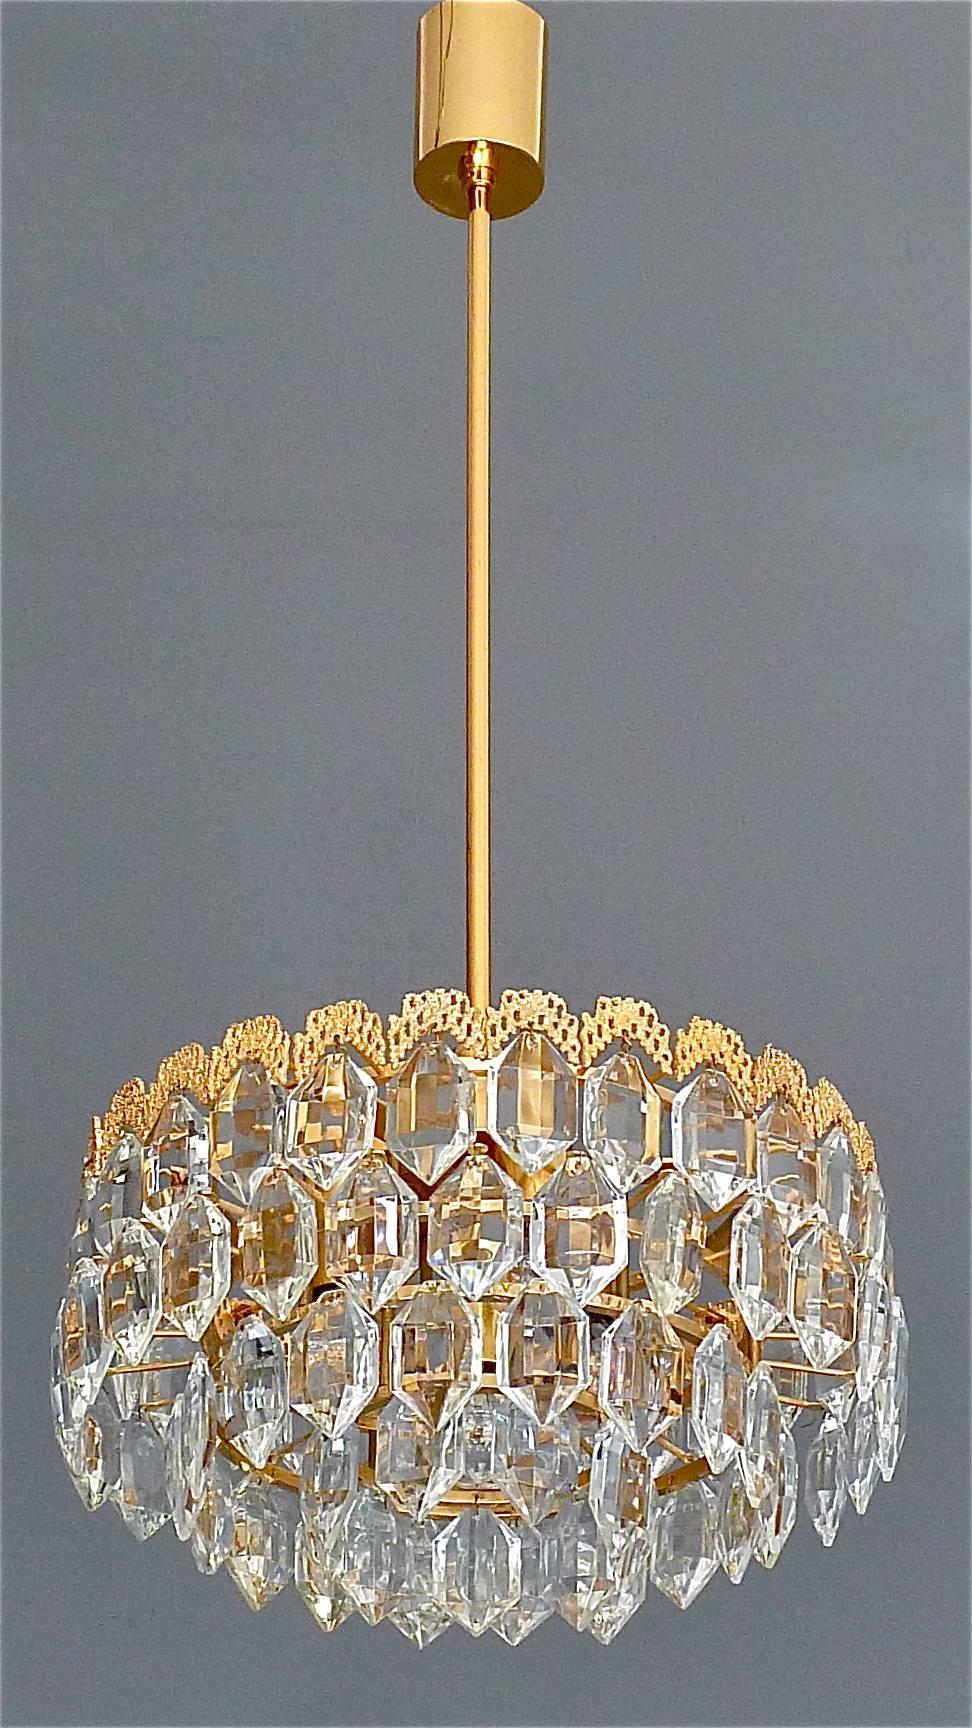 Lustre précieux en laiton doré et verre de cristal fabriqué par la célèbre société Bakalowits, en Autriche, vers les années 1960. Le plafonnier et le cadre sont en laiton doré avec une magnifique décoration dorée sur le haut du cadre supérieur qui